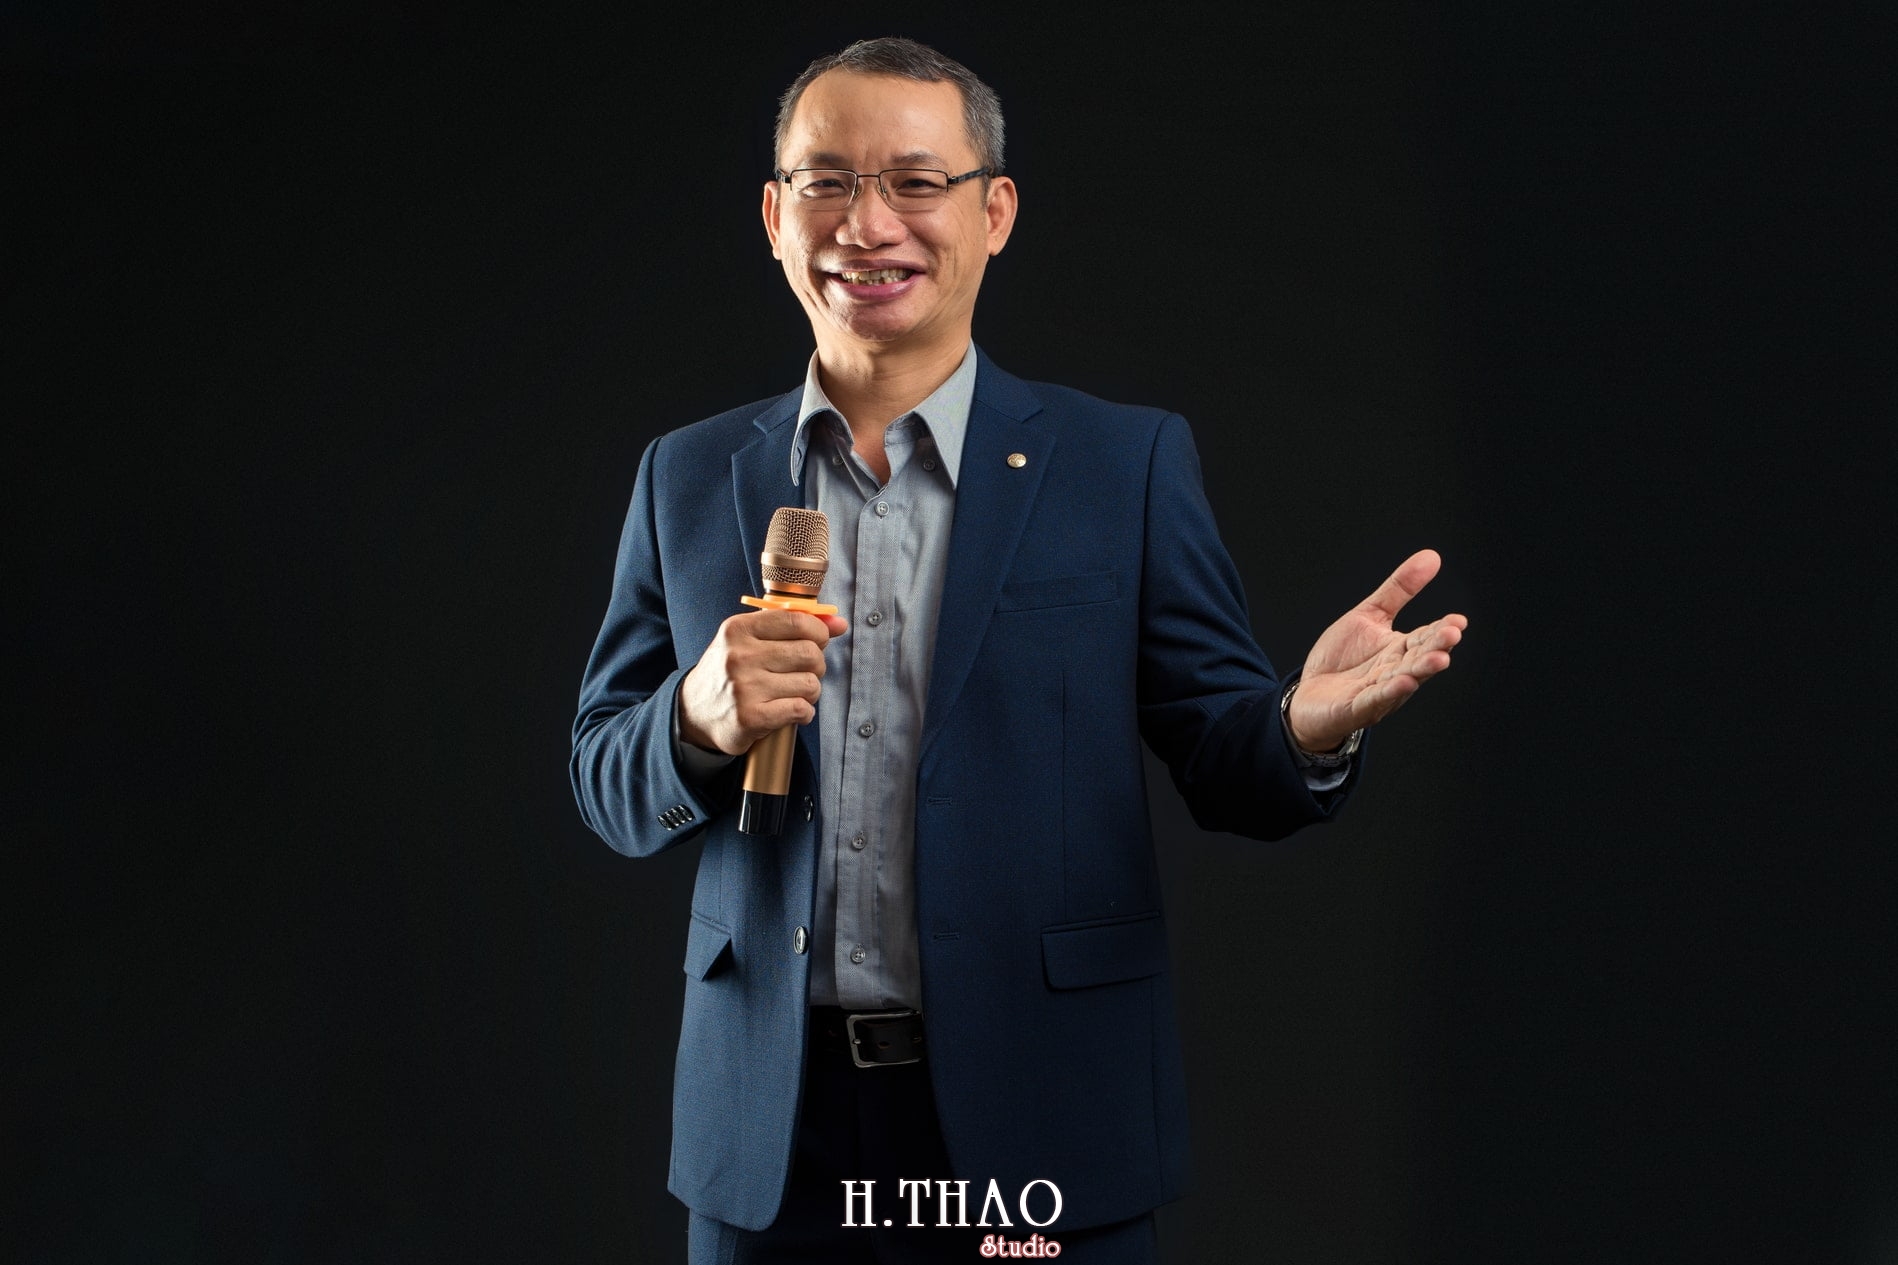 Anh giang vien dai hoc 5 - Bộ ảnh doanh nhân giảng viên Minh Phát lịch lãm - HThao Studio